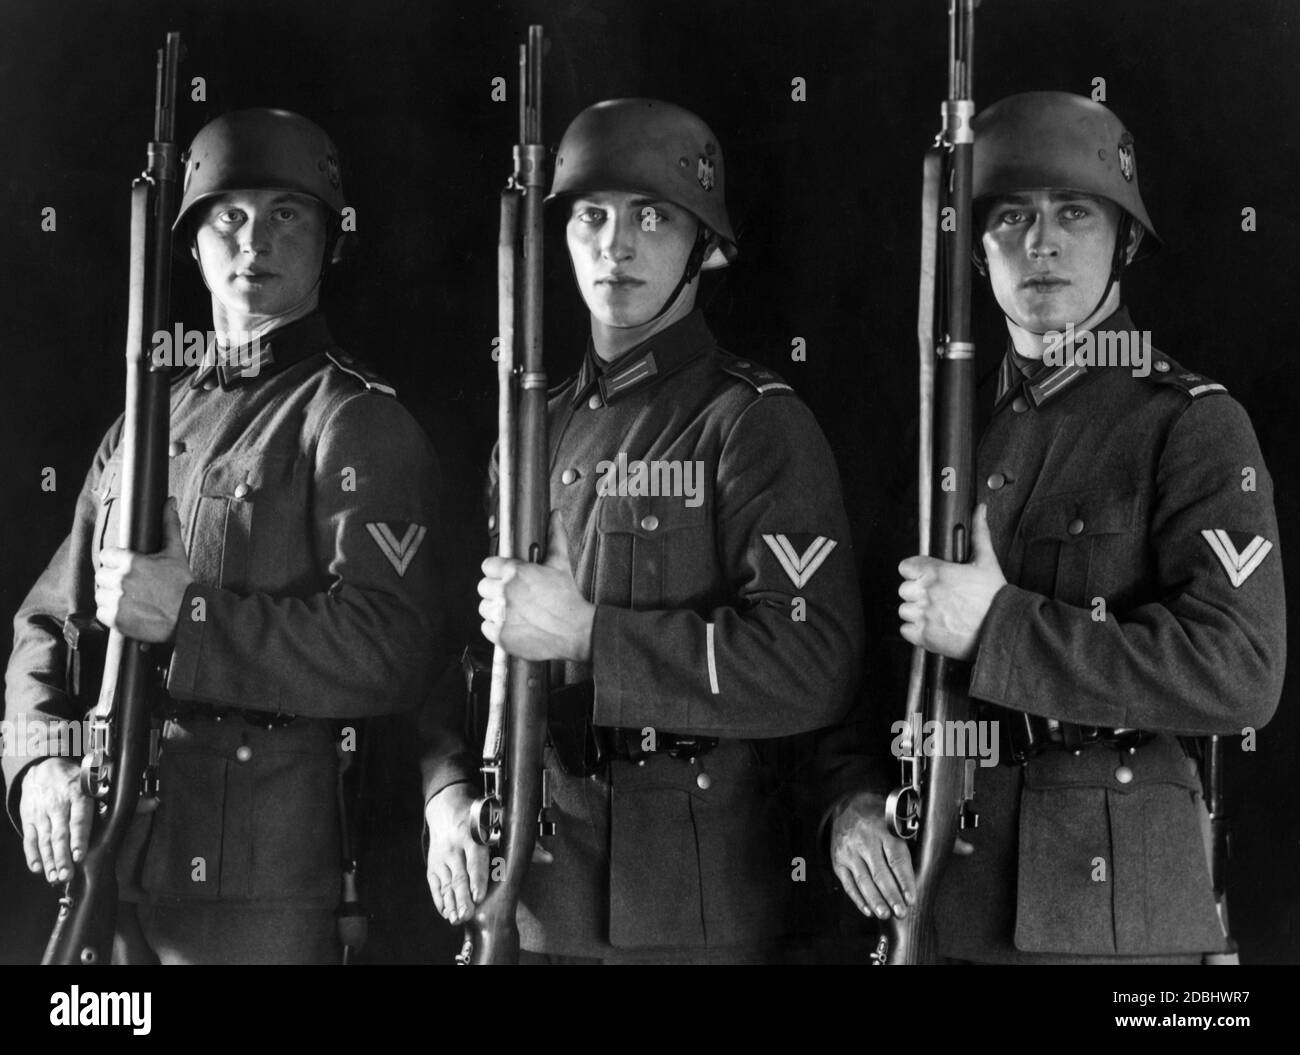 Studiofoto von Soldaten des Berliner Garde-Bataillons in Praesentiergriff. Sie tragen die neue Uniform Feldbluse 36, aber immer noch die Stahlhelm 18 Helme, die bereits mit dem neuen souveränen Insignien der NS-Zeit versehen sind. Die Gewehre sind vom Typ Gewehr 98. Stockfoto